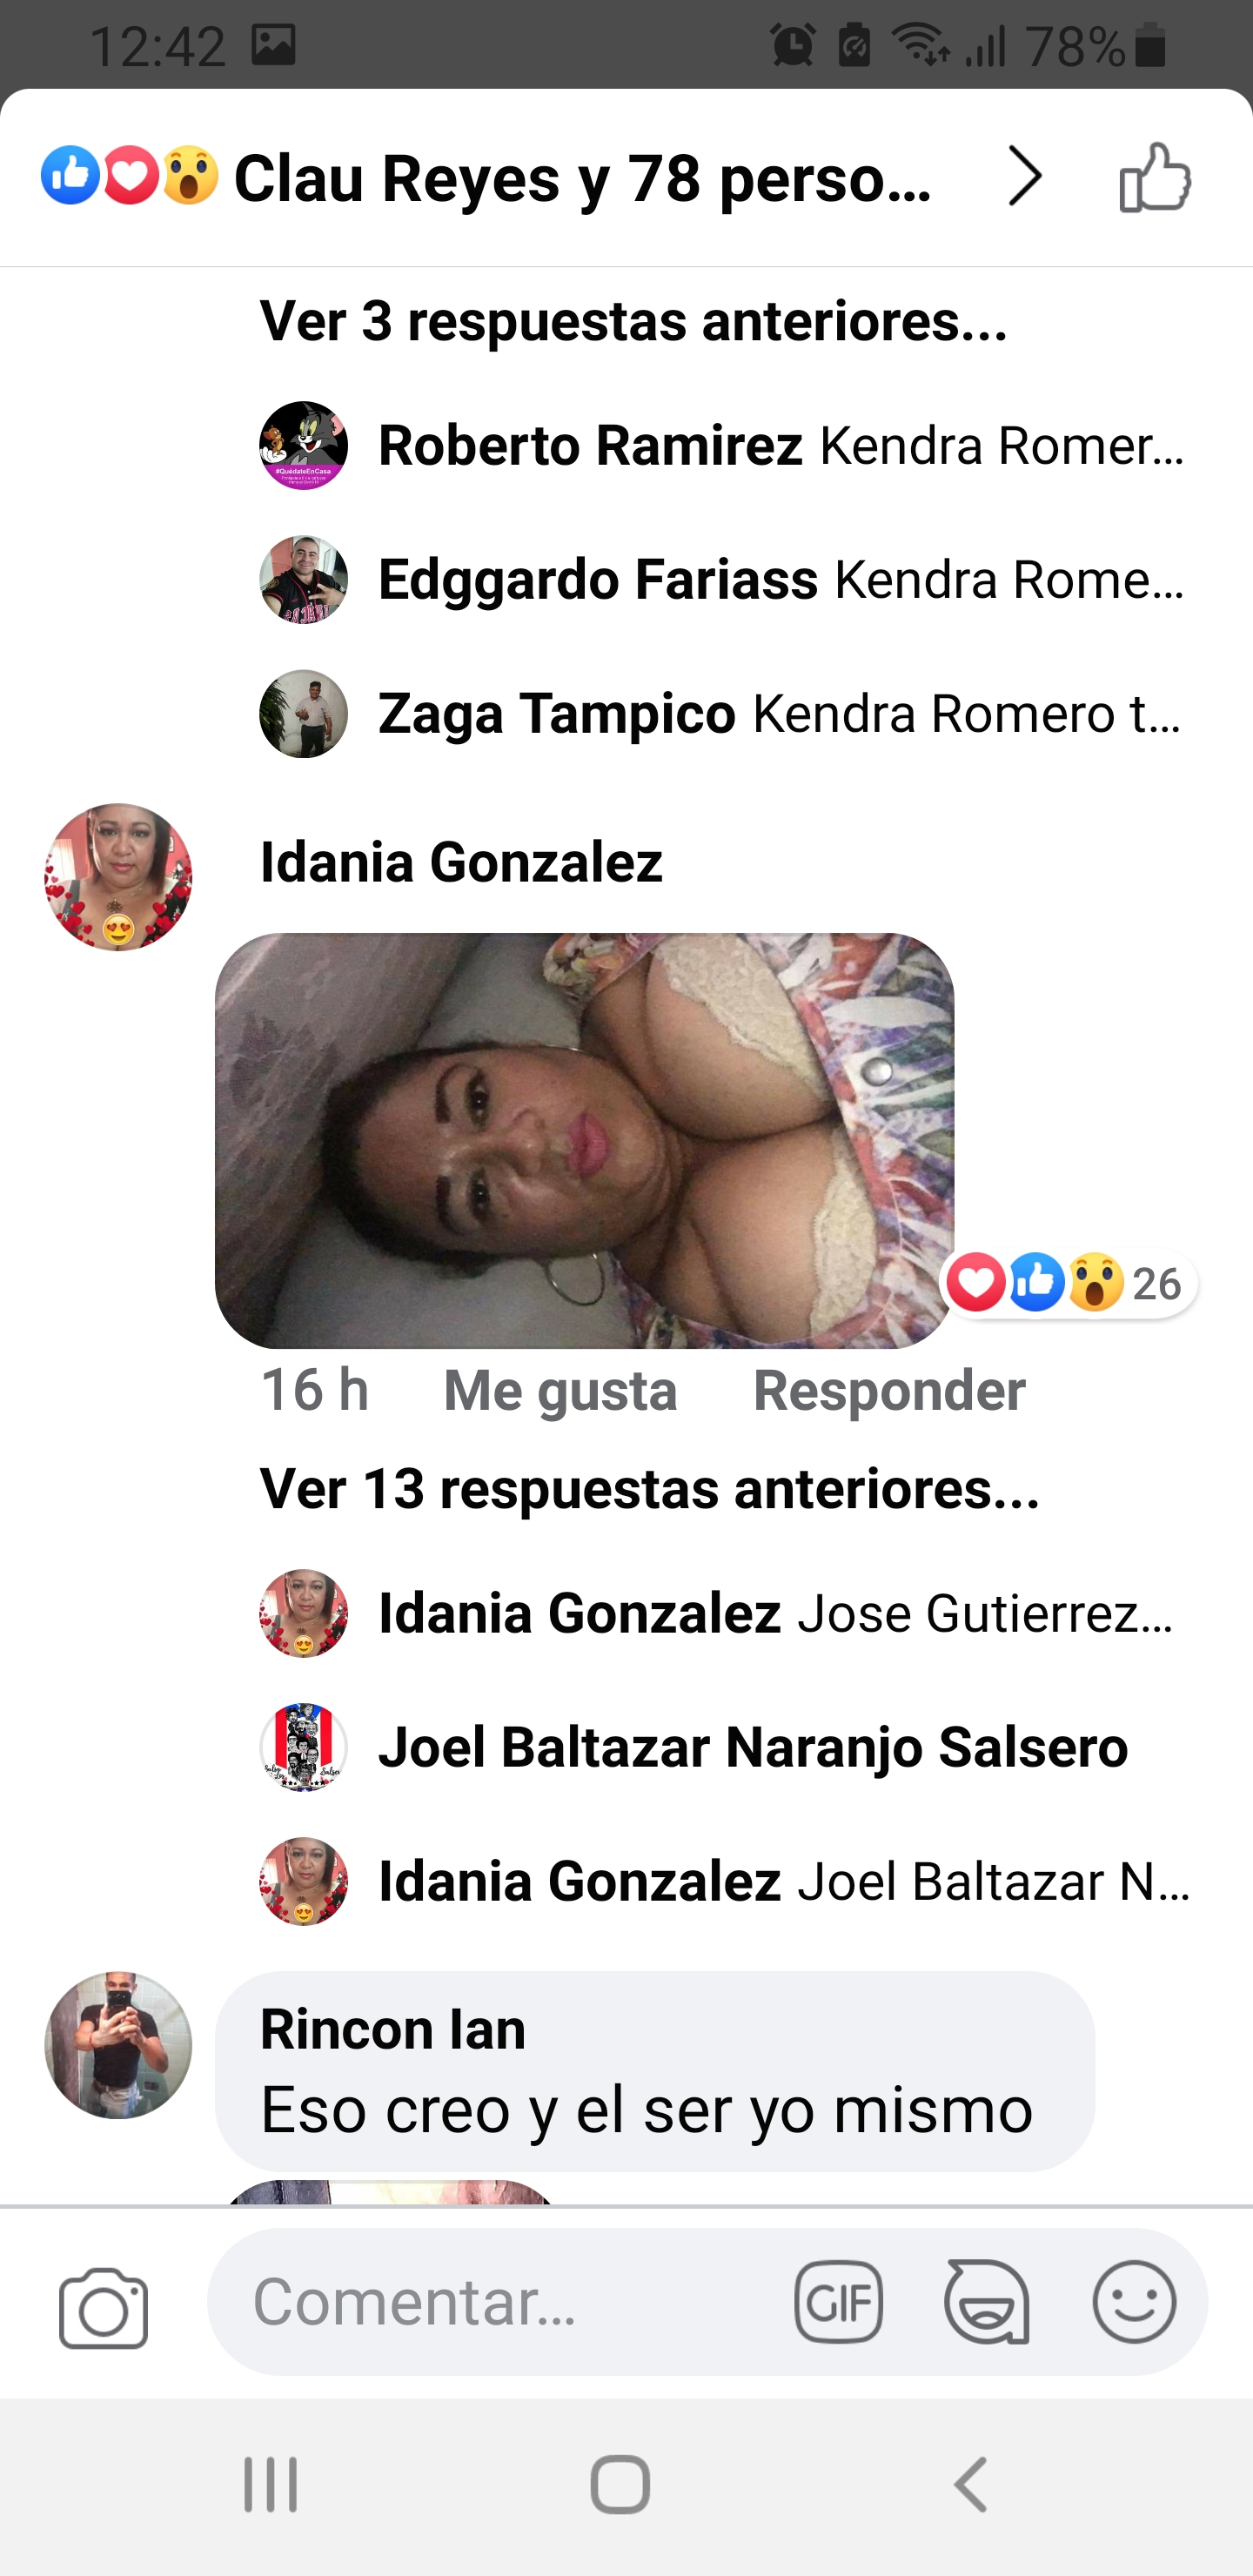 Idania Gonzalez